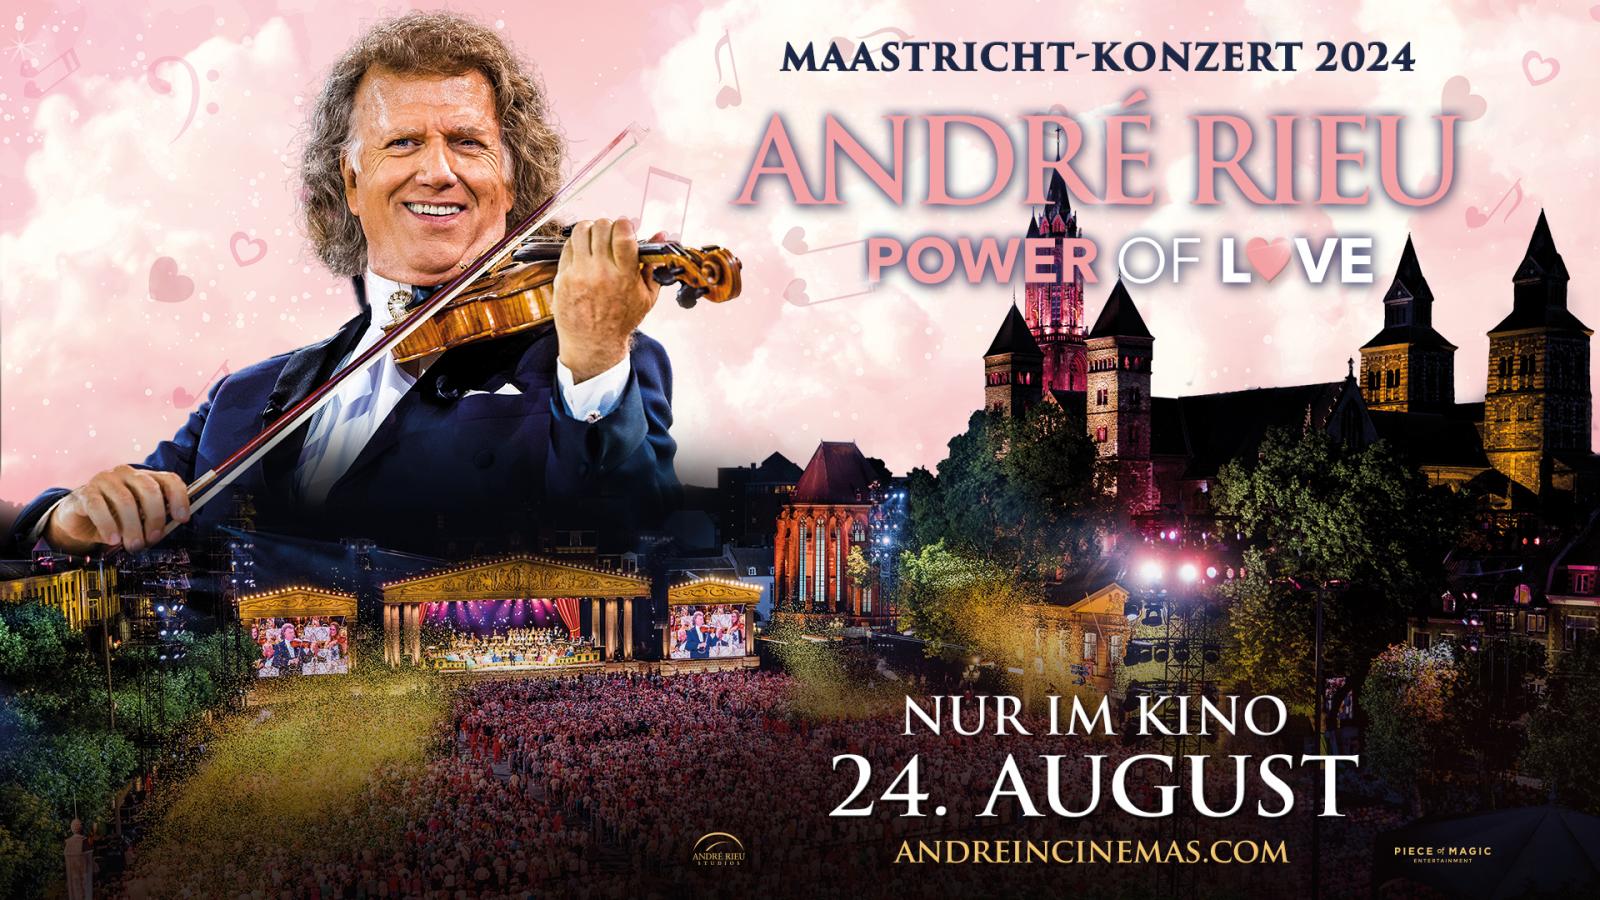 André Rieus Maastricht-Konzert 2024: Power of Love